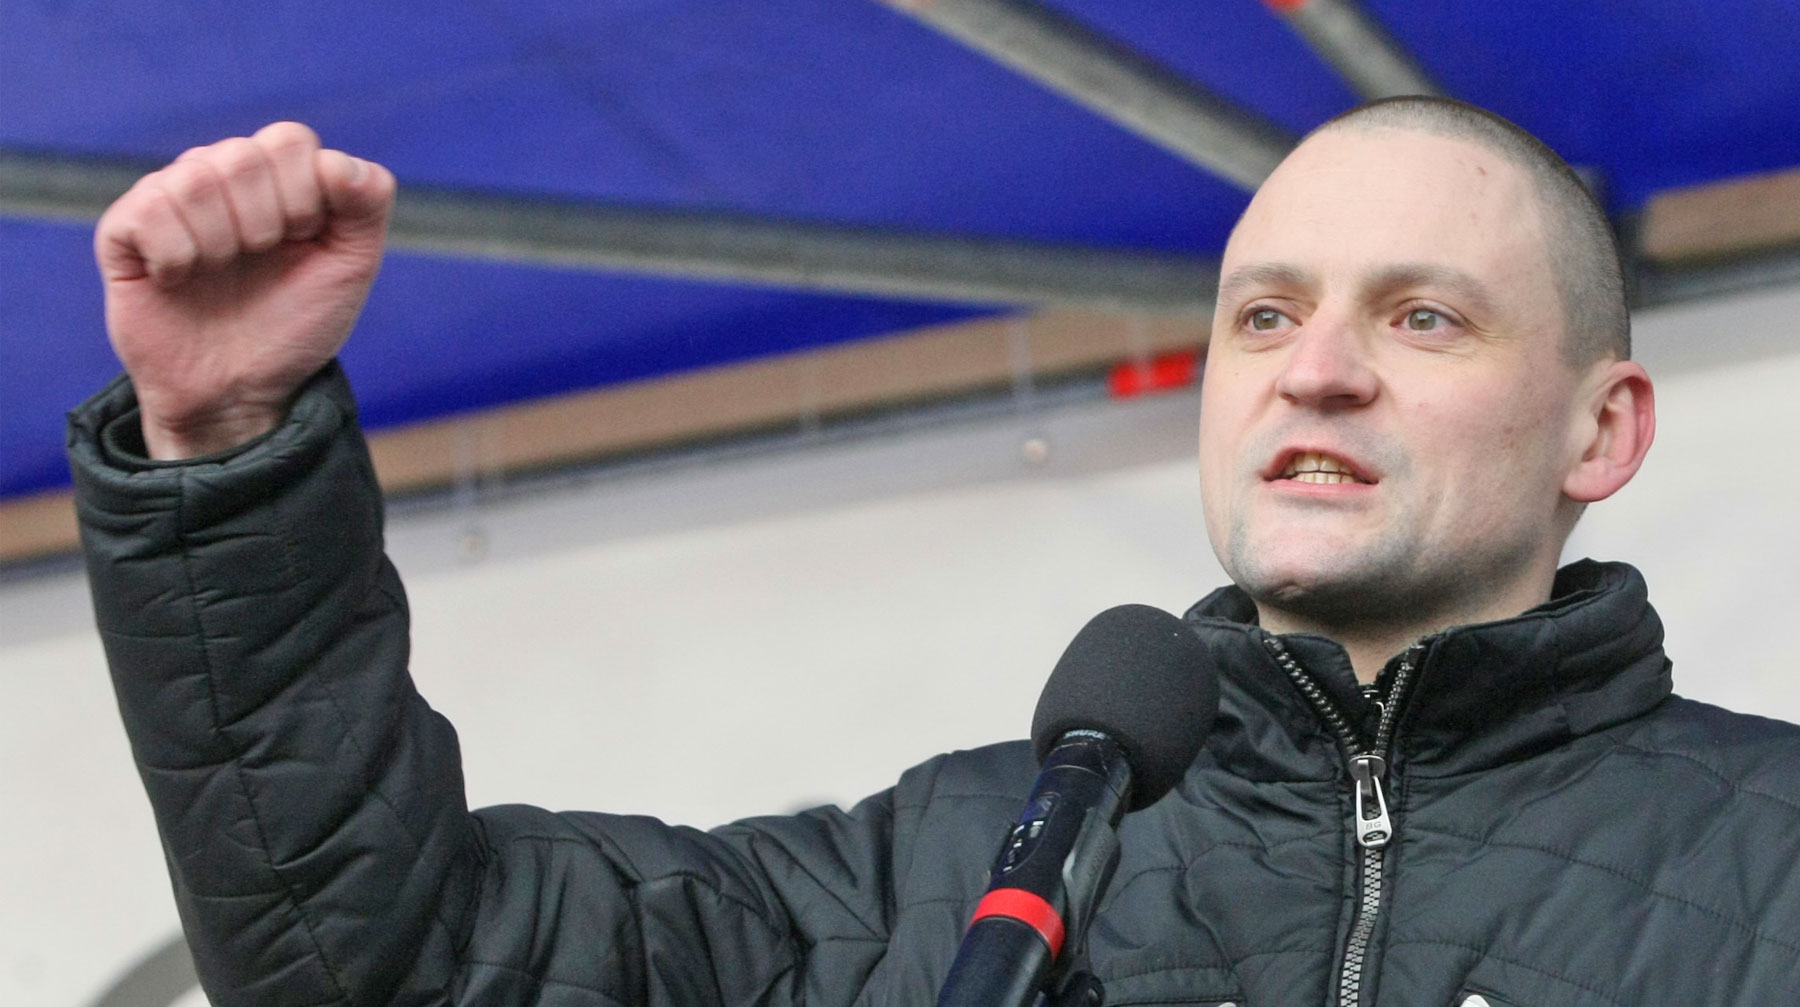 Арест на собственность политика был наложен в рамках «болотного дела» в 2012 году Координатор «Левого фронта» Сергей Удальцов